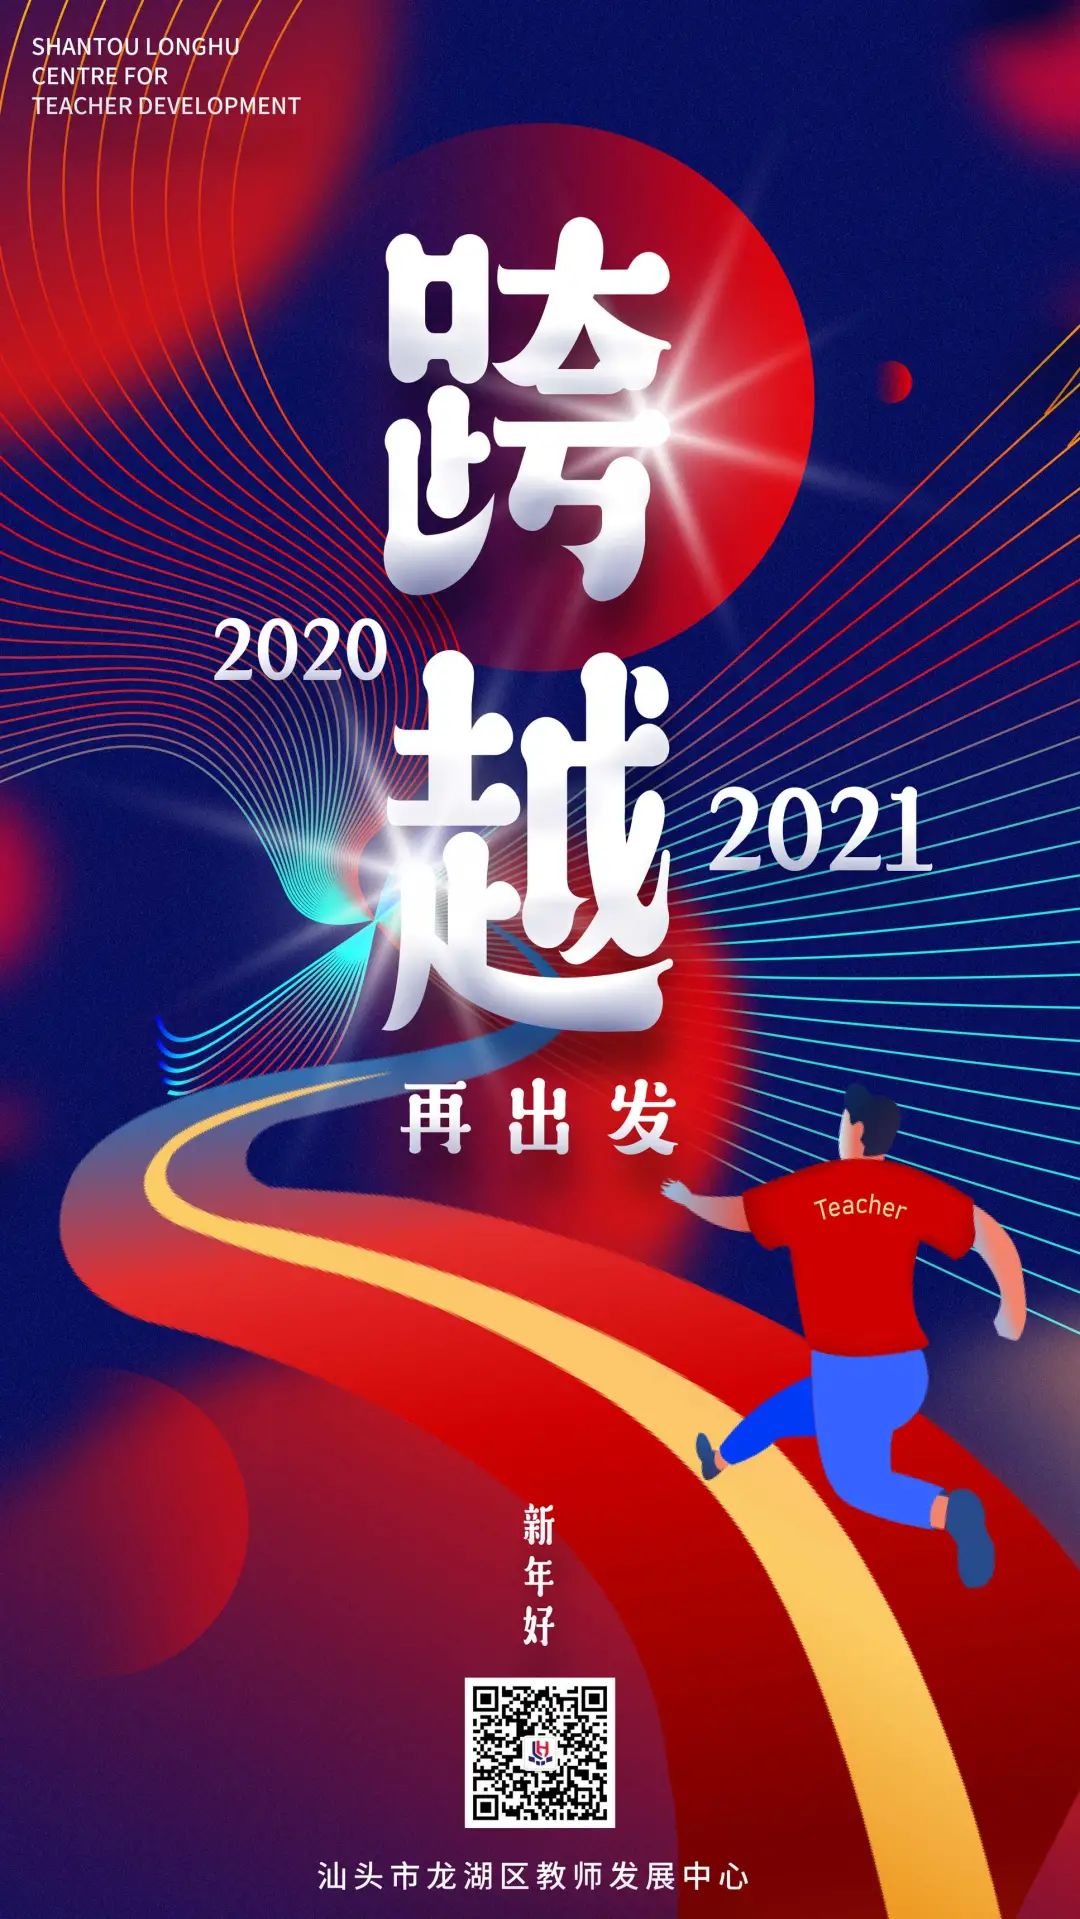 龙湖教师发展中心2020年大事记